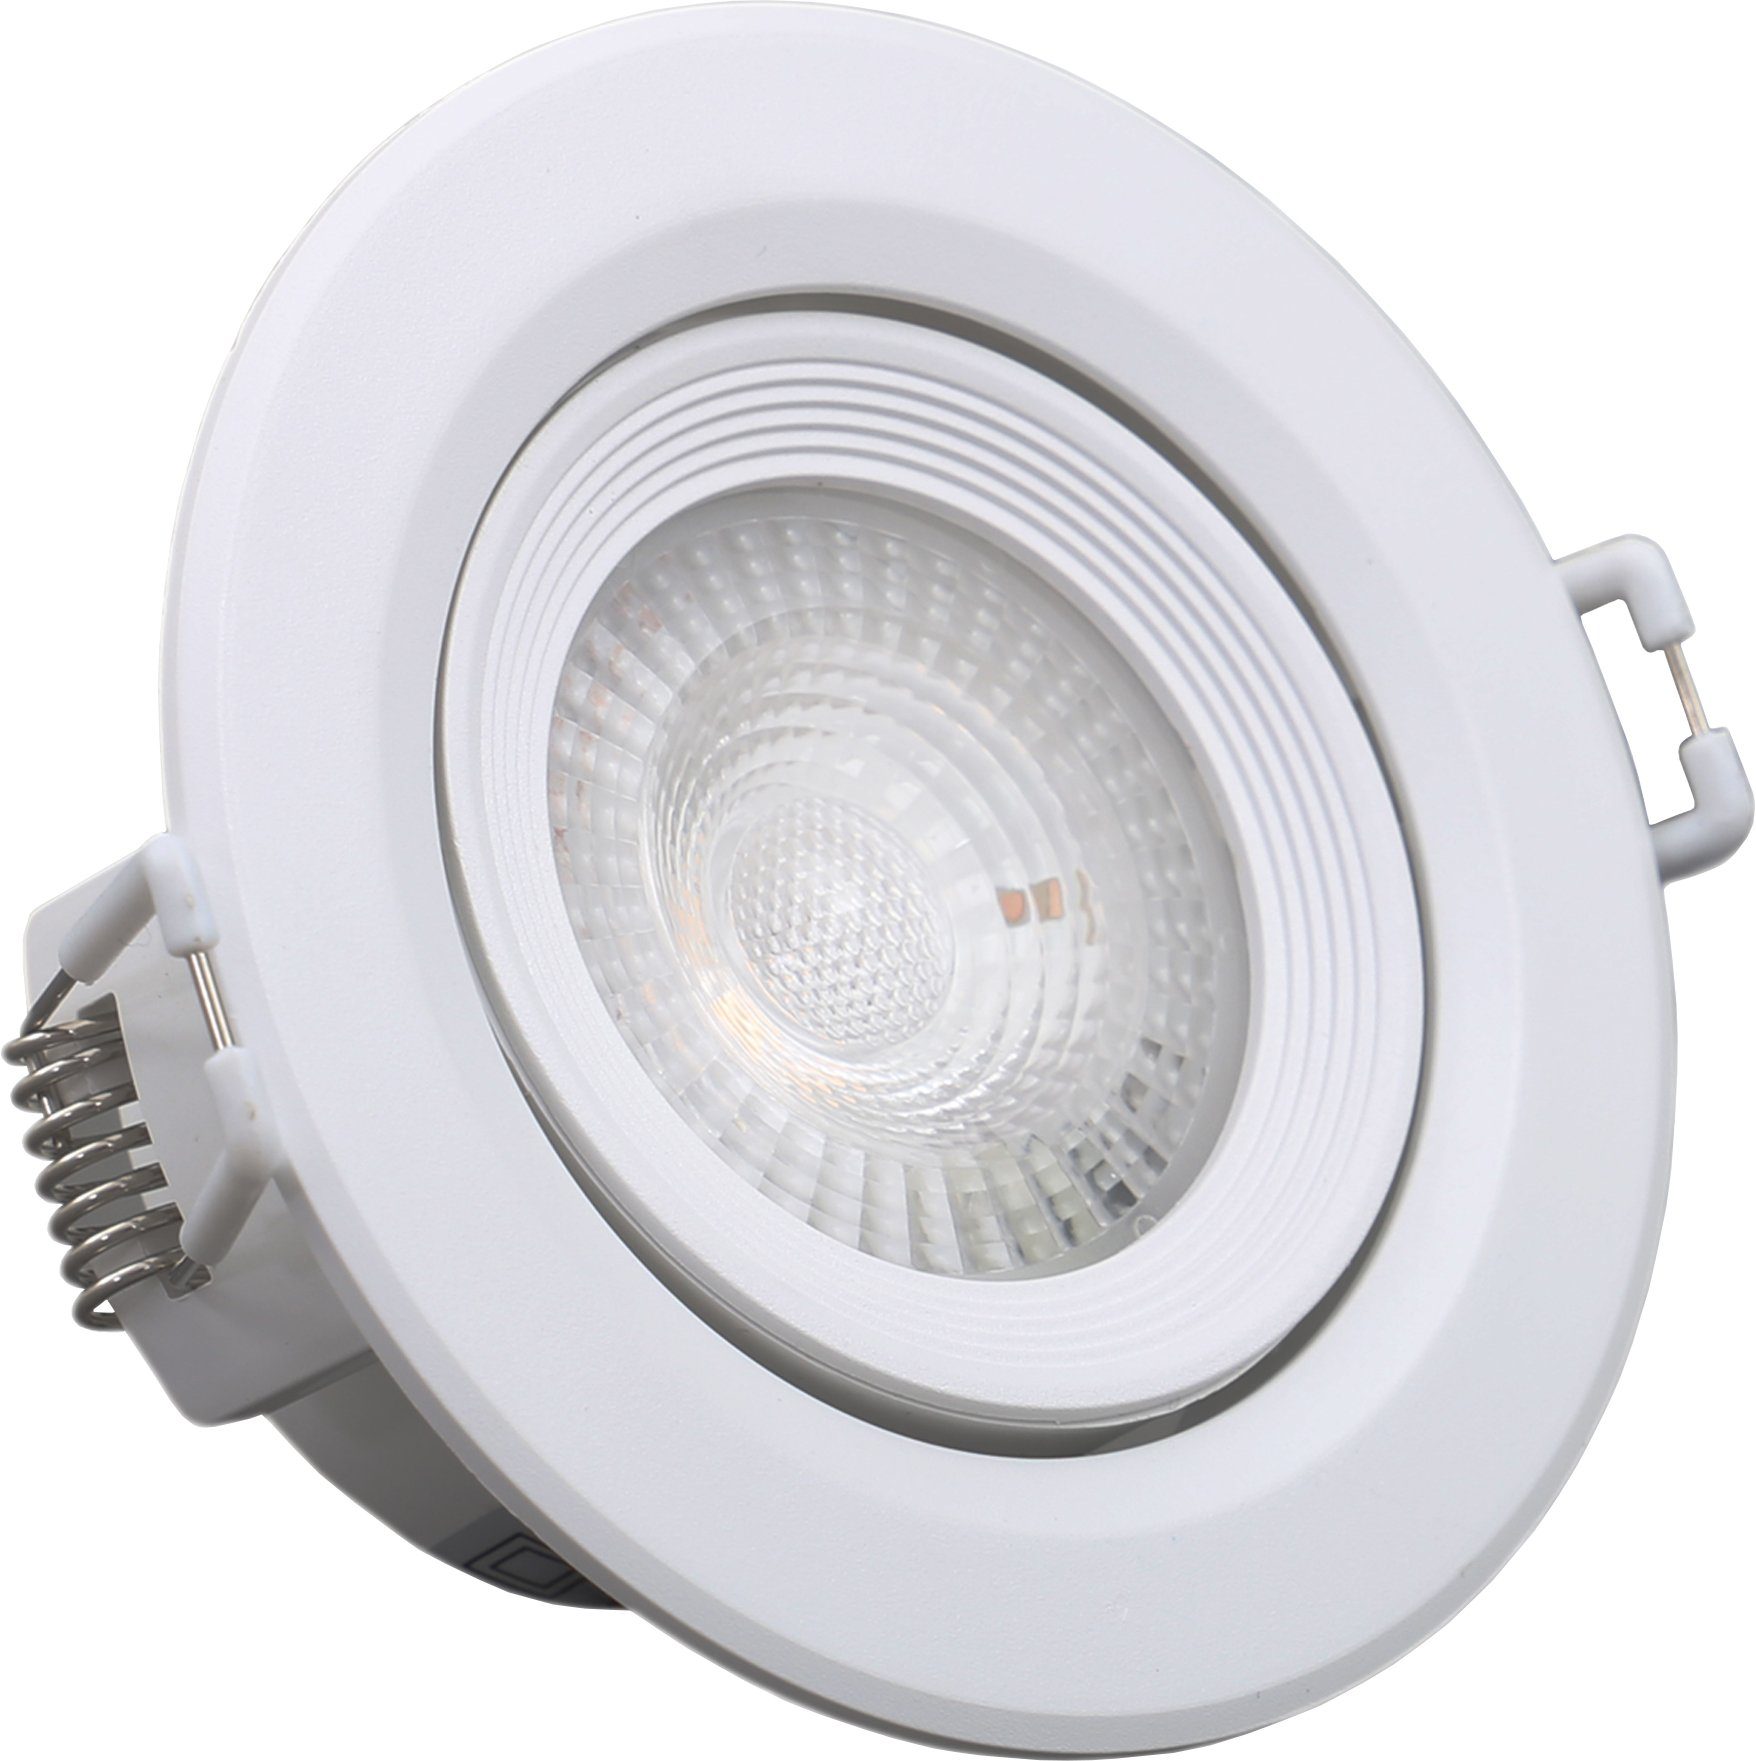 B.K.Licht LED Einbauleuchte, LED fest 5er Set Einbaustrahler, 230V, Einbauspots, Lampen, Warmweiß, ultra-flach, integriert